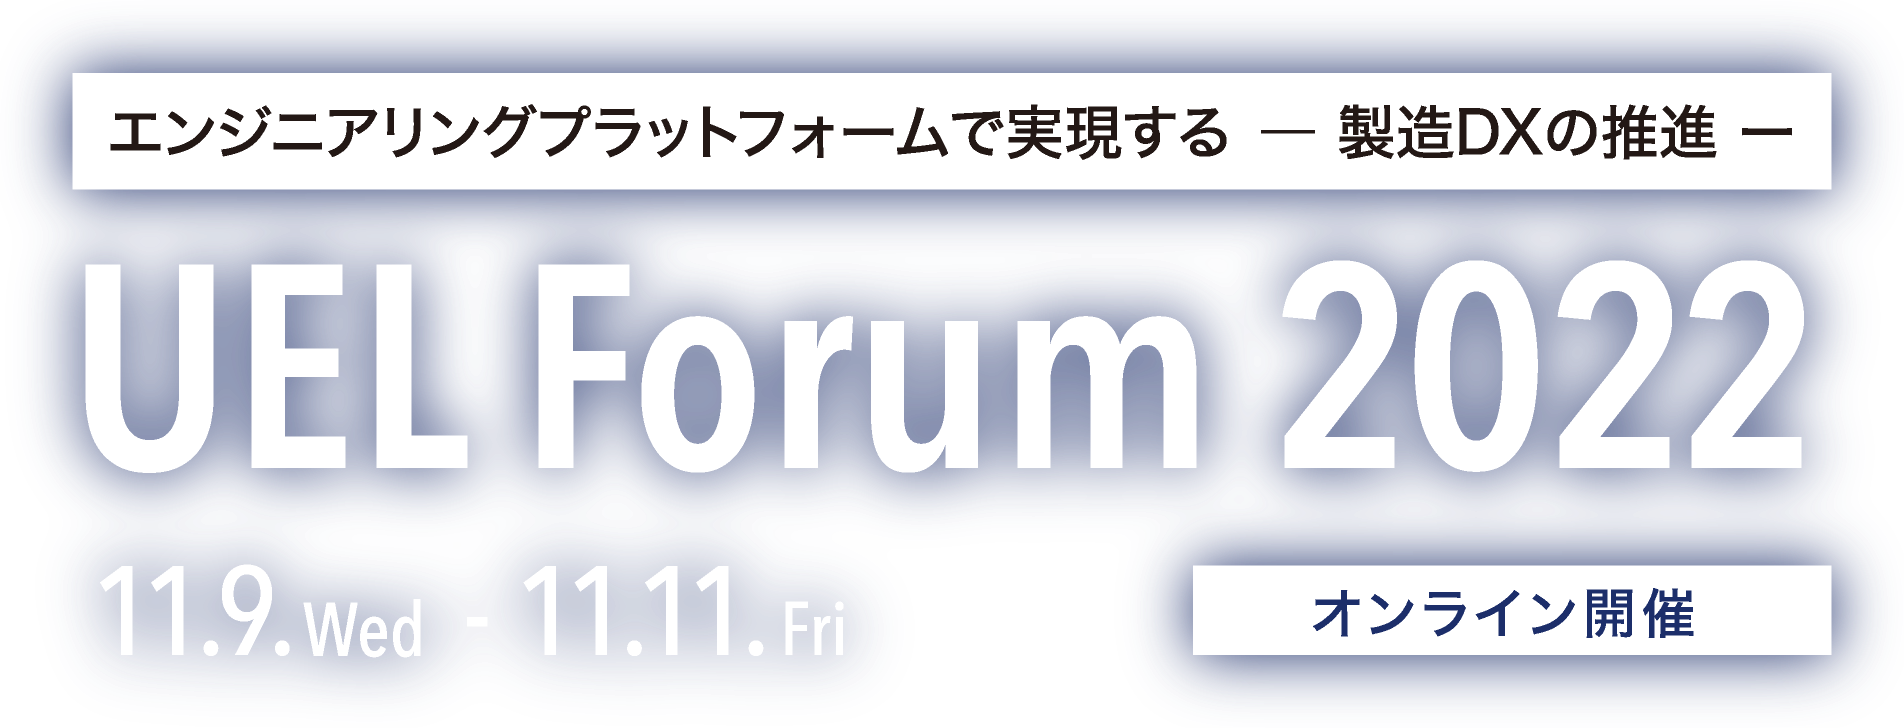 エンジニアリングプラットフォームで進化する 製造DXの推進 | UEL Forum 2022 | 11.10.Wed - 11.12.Fri [オンライン開催]